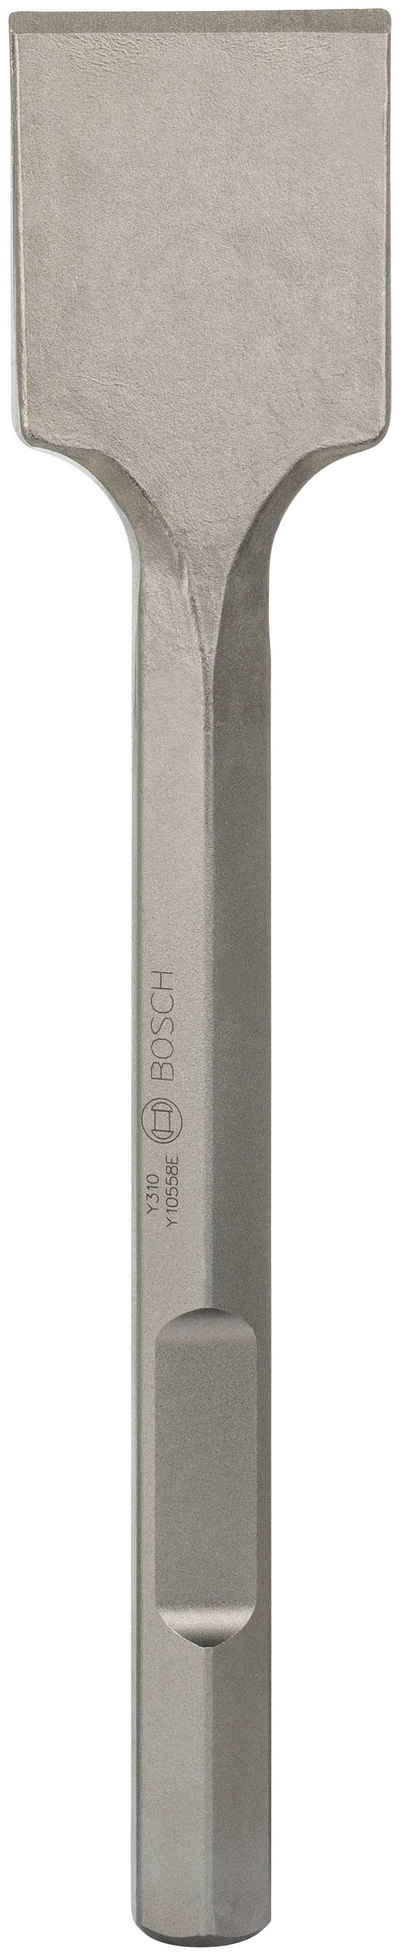 Bosch Professional Spatmeißel, 41 in mm, 28-mm-Sechskantaufnahme 400 x 80 mm